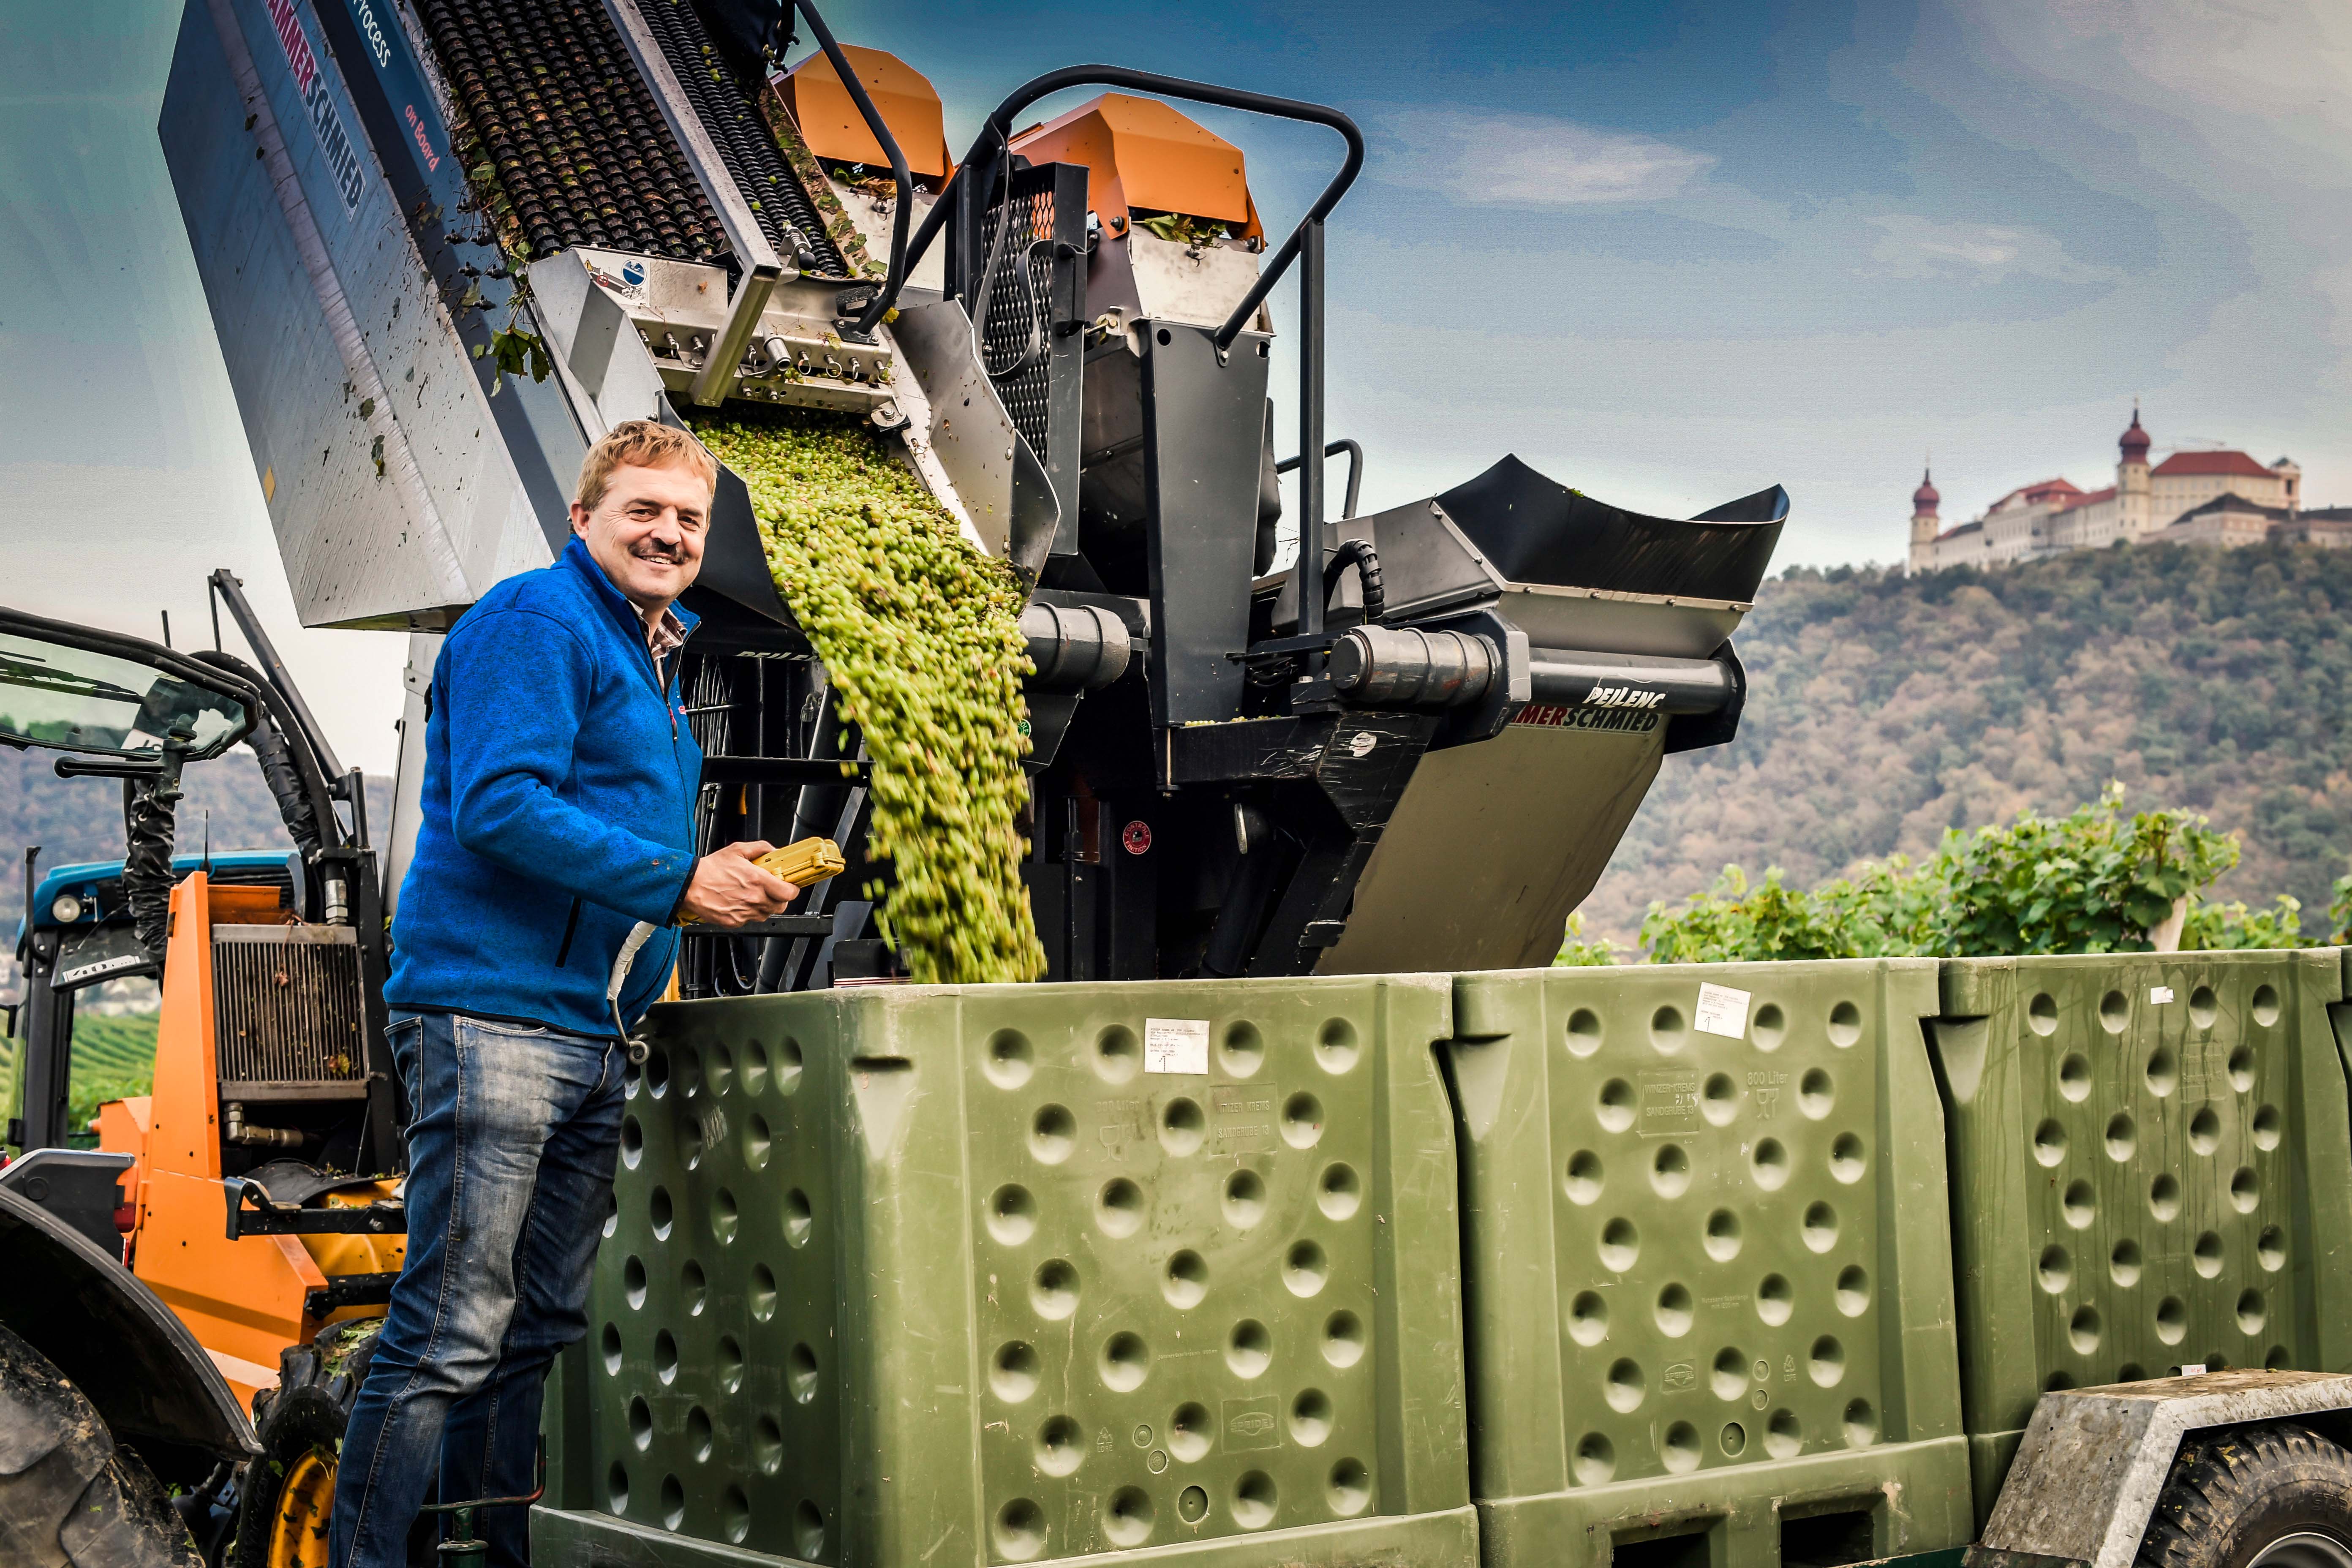 Josef Dockner erntet gerade die Beeren, welche von einer Erntemaschine in große, grüne Behälter gefüllt wird